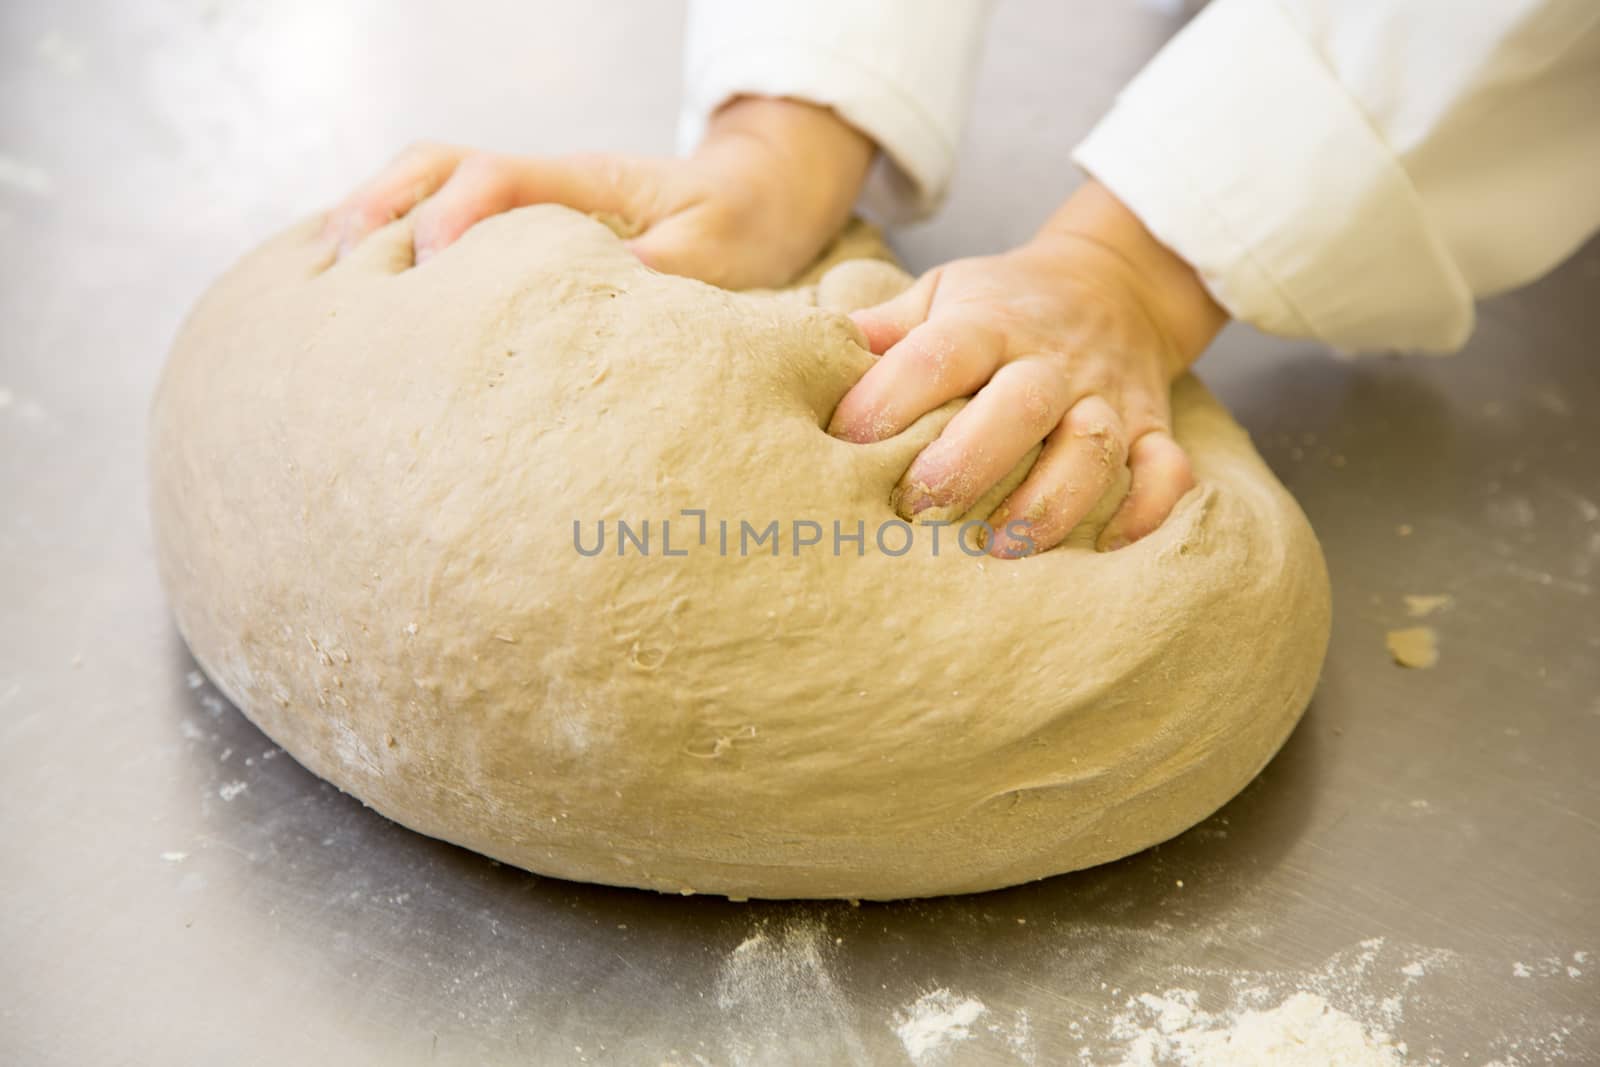 Baker kneading bread dough in bakery or bakehouse